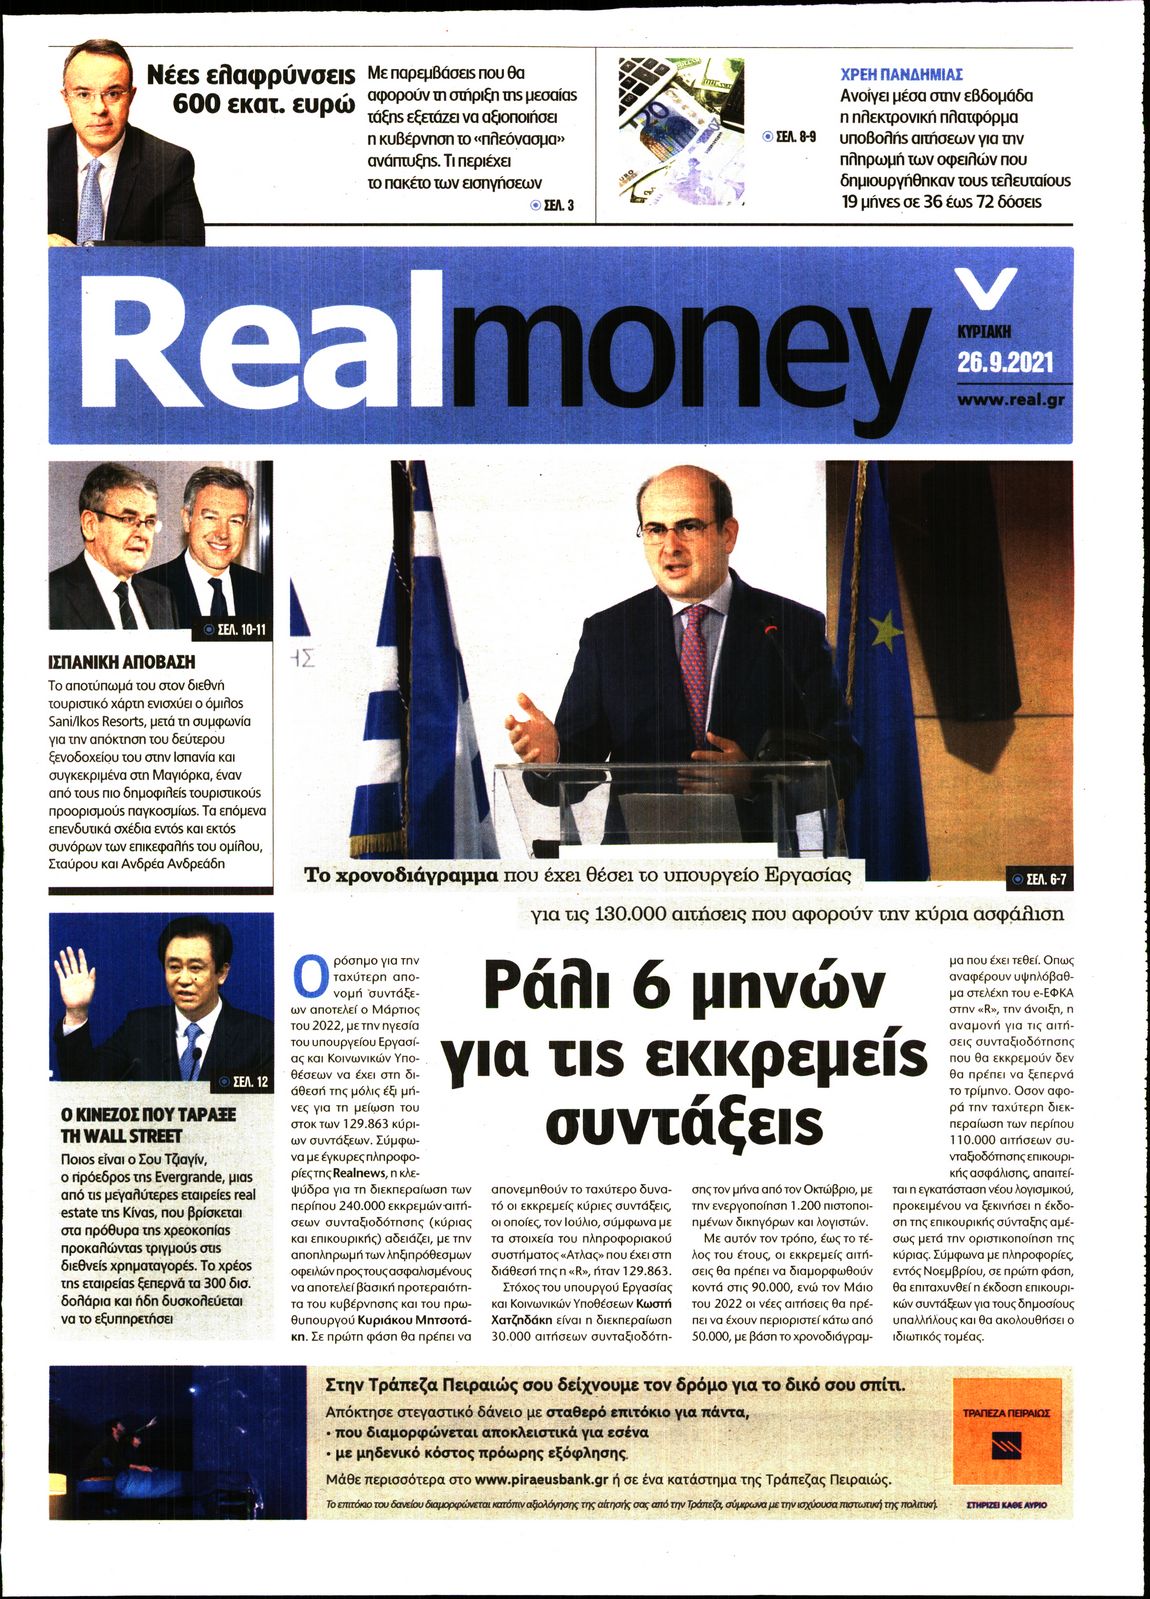 Πρωτοσέλιδο του εντύπου «REAL NEWS - REAL MONEY» που δημοσιεύτηκε στις 26/09/2021